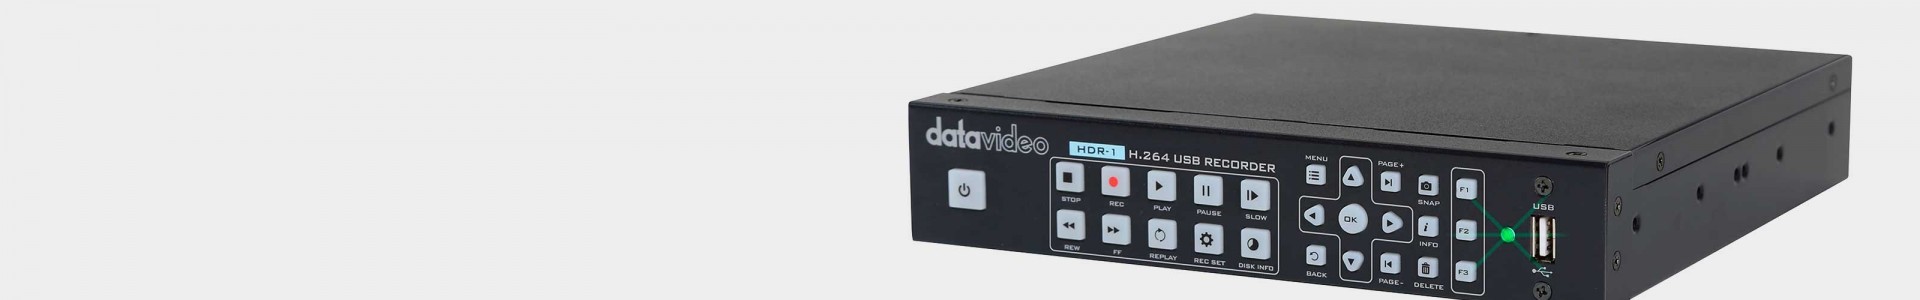 Grabadores profesionales de vídeo Datavideo - Avacab